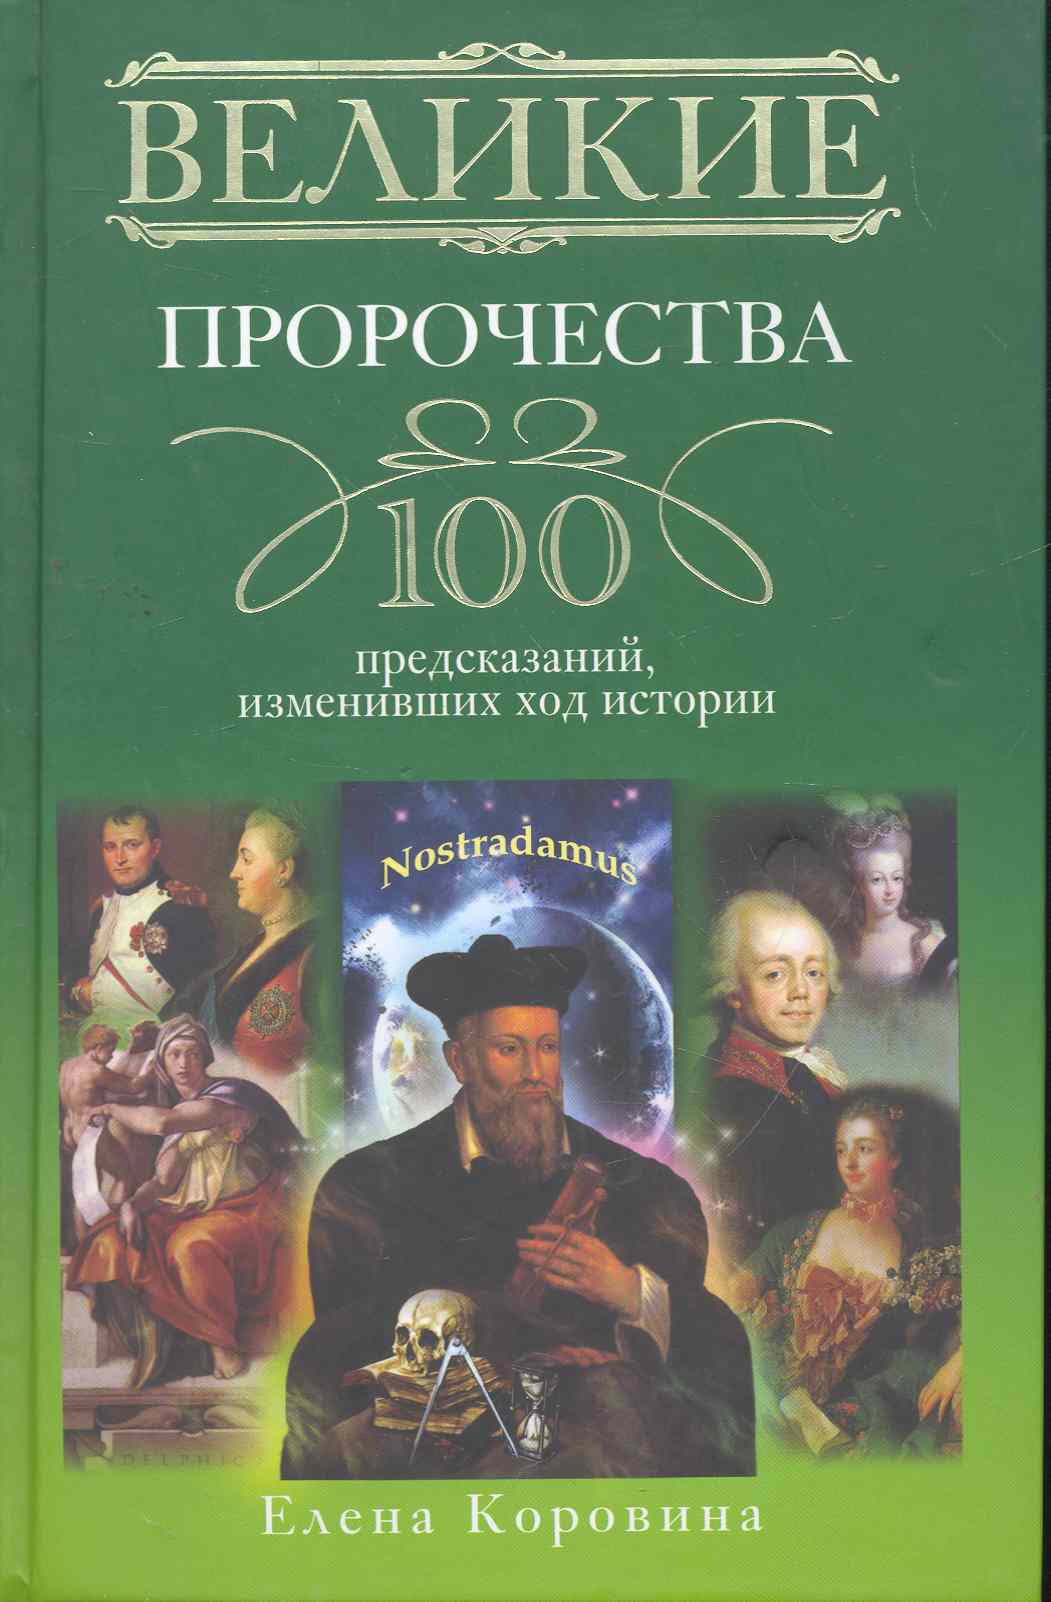 Коровина Елена Анатольевна - Великие пророчества. 100 предсказаний, изменивших ход истории